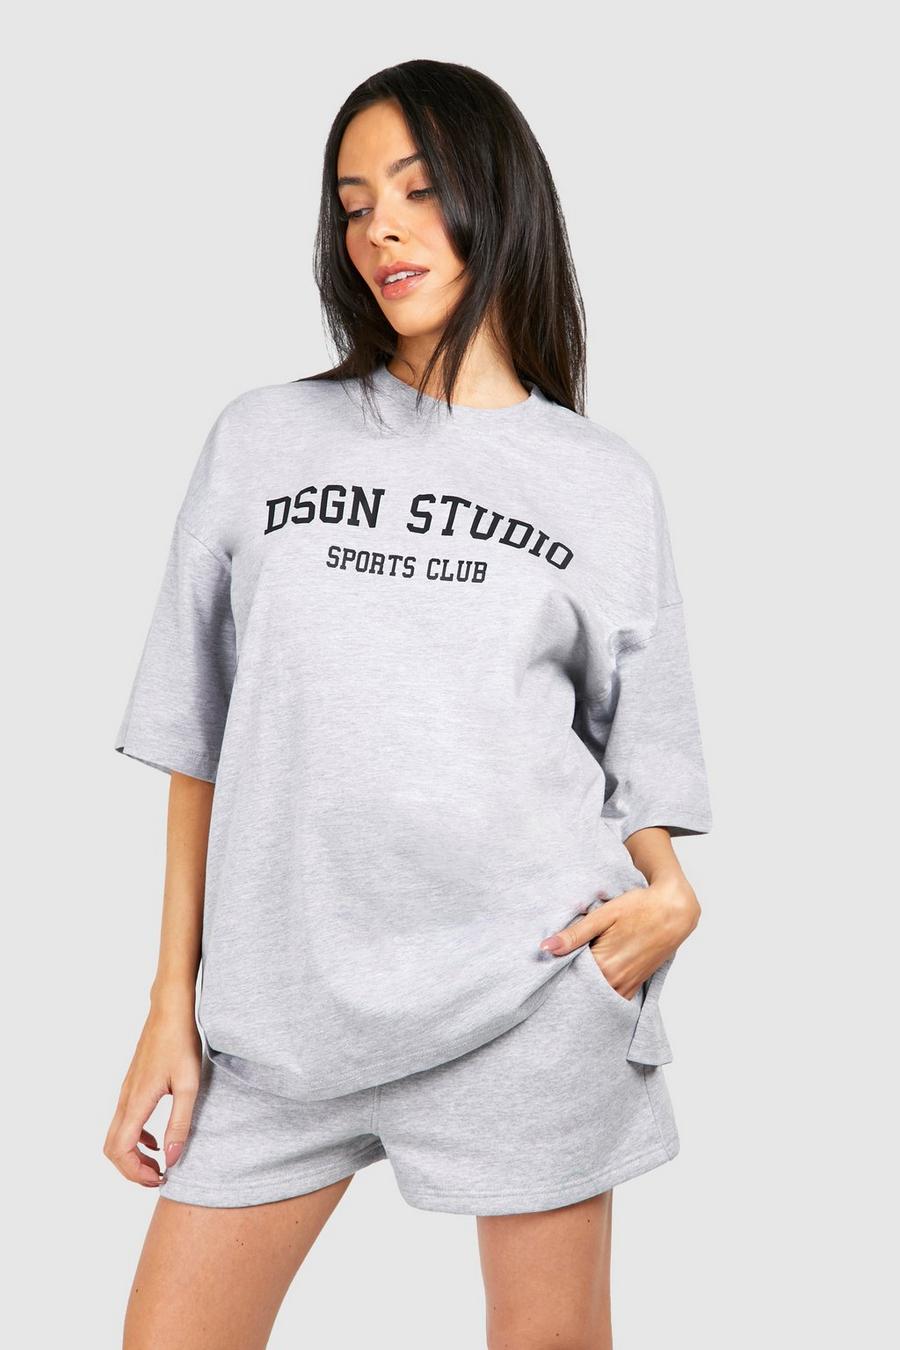 Camiseta Premamá oversize con estampado Dsgn Studio, Grey marl image number 1